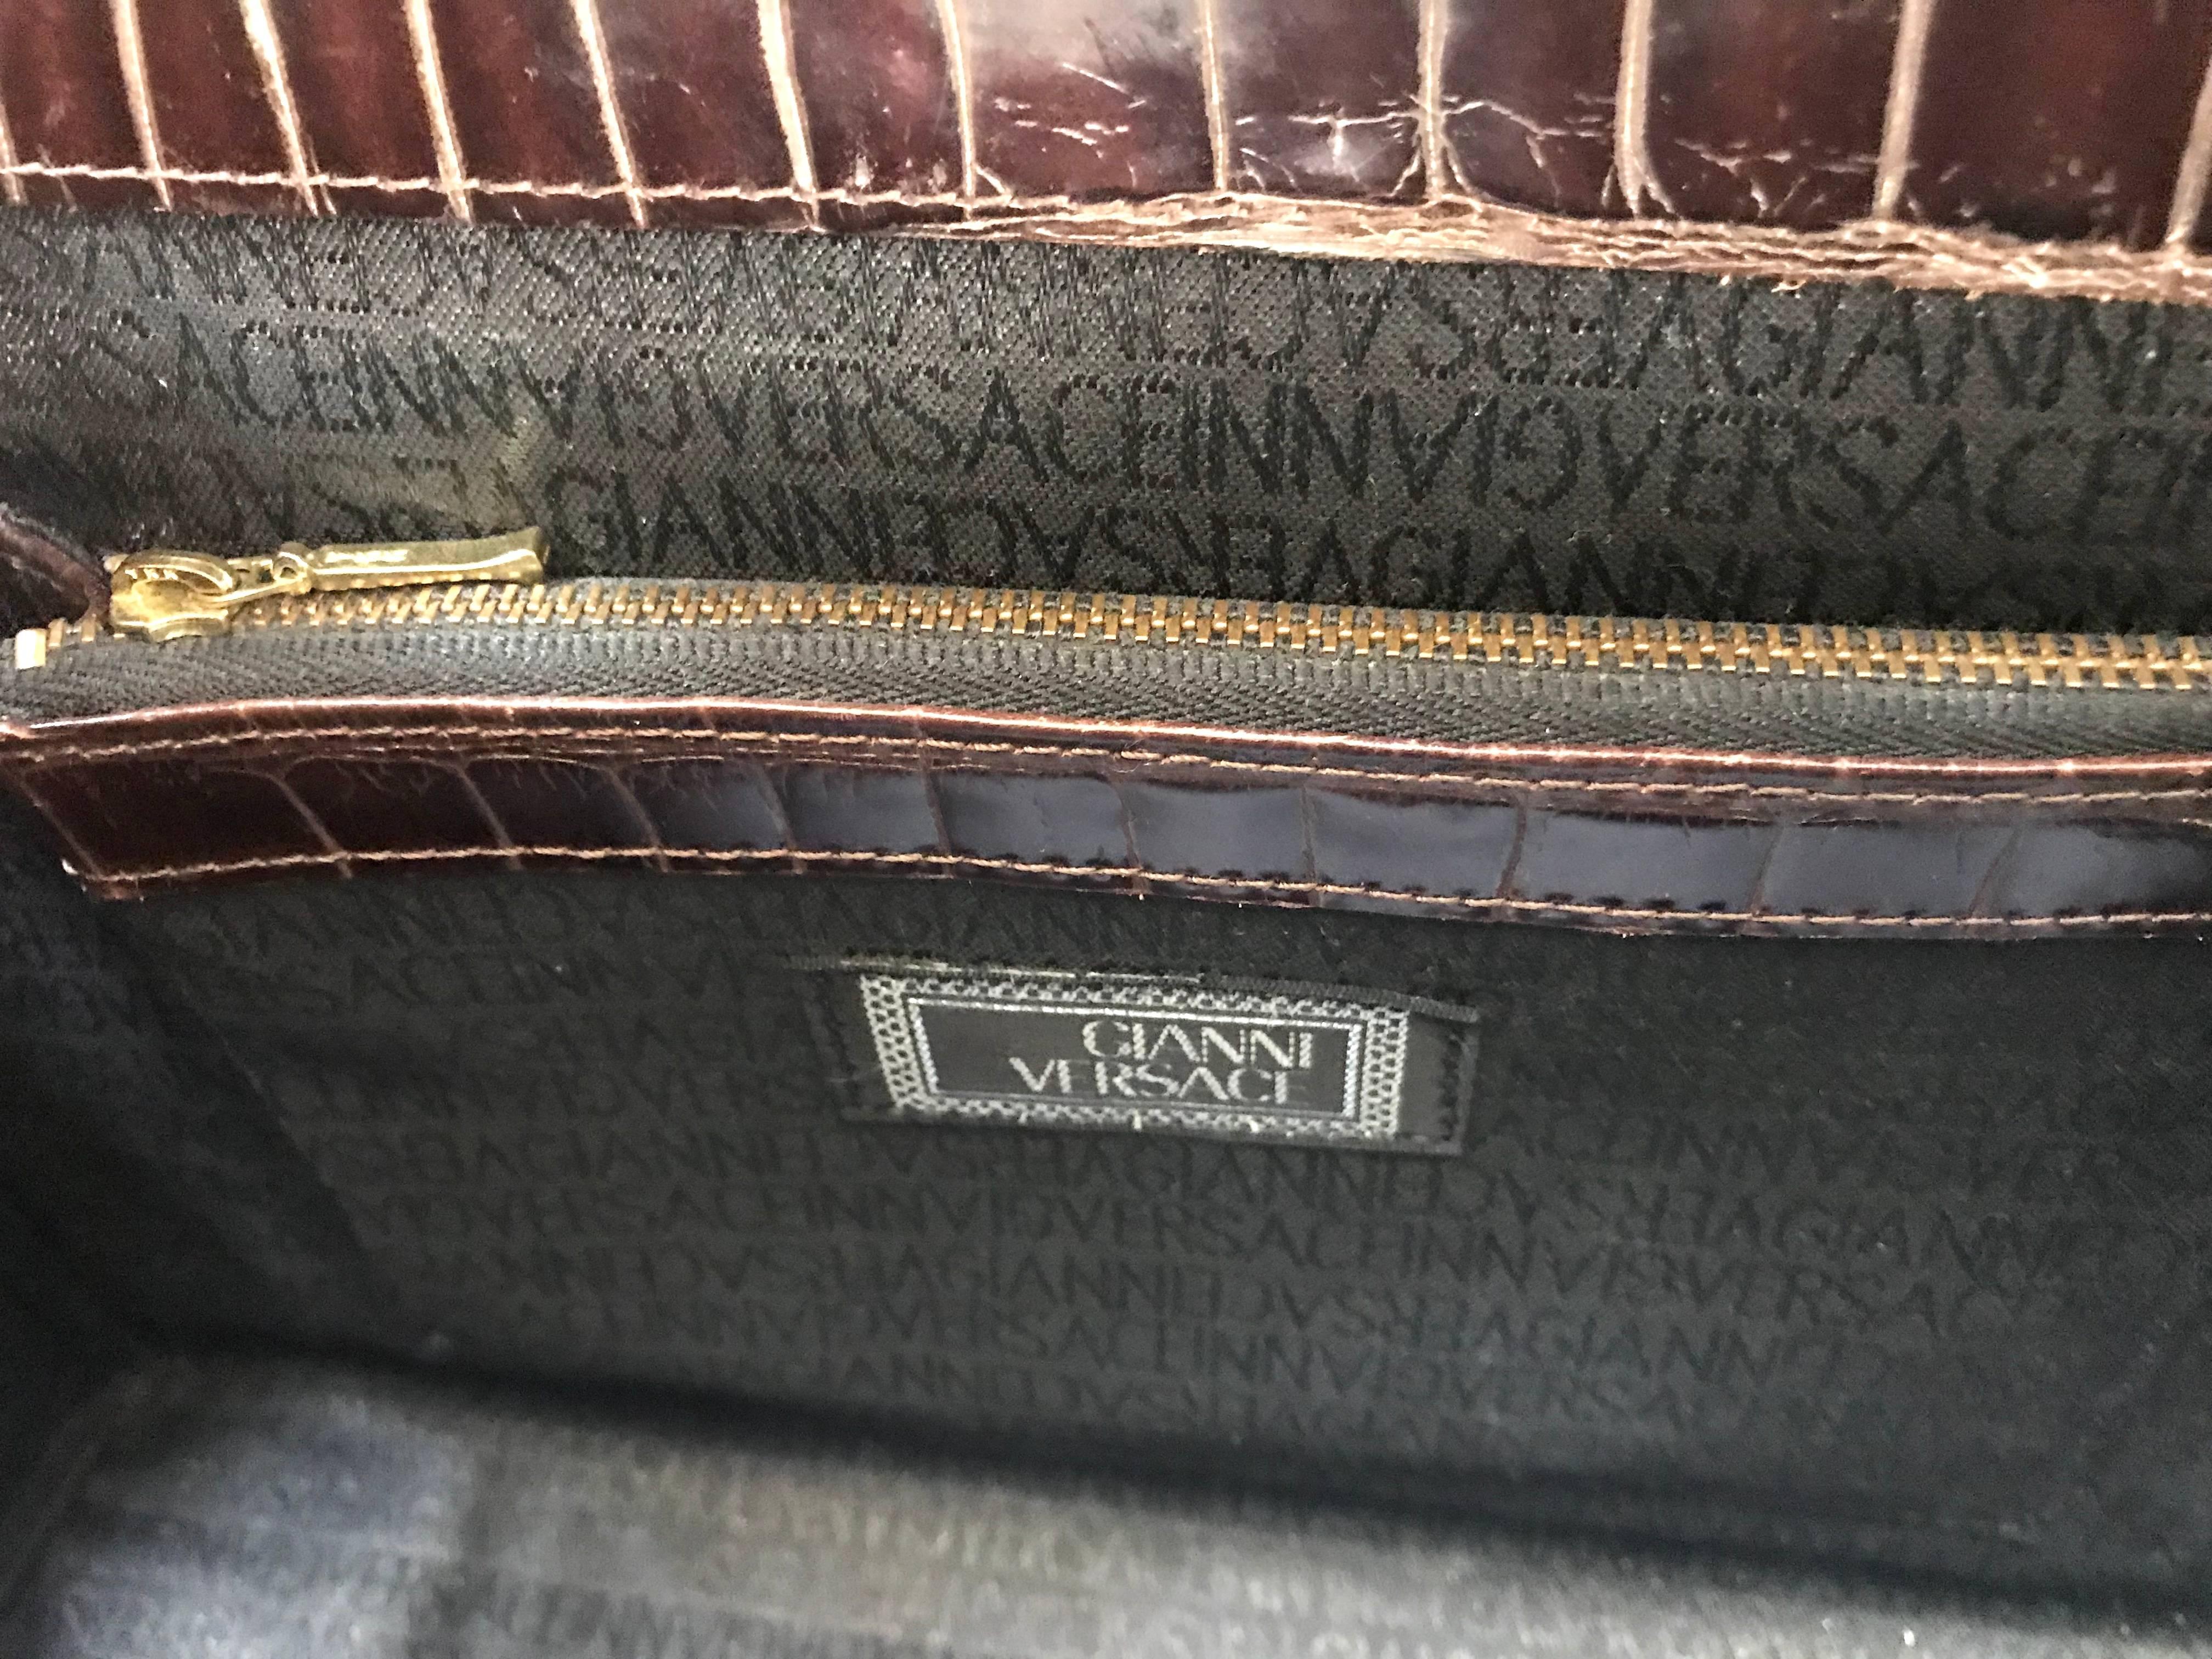 Vintage Gianni Versace dark brown croc embossed leather Kelly style bag. 12